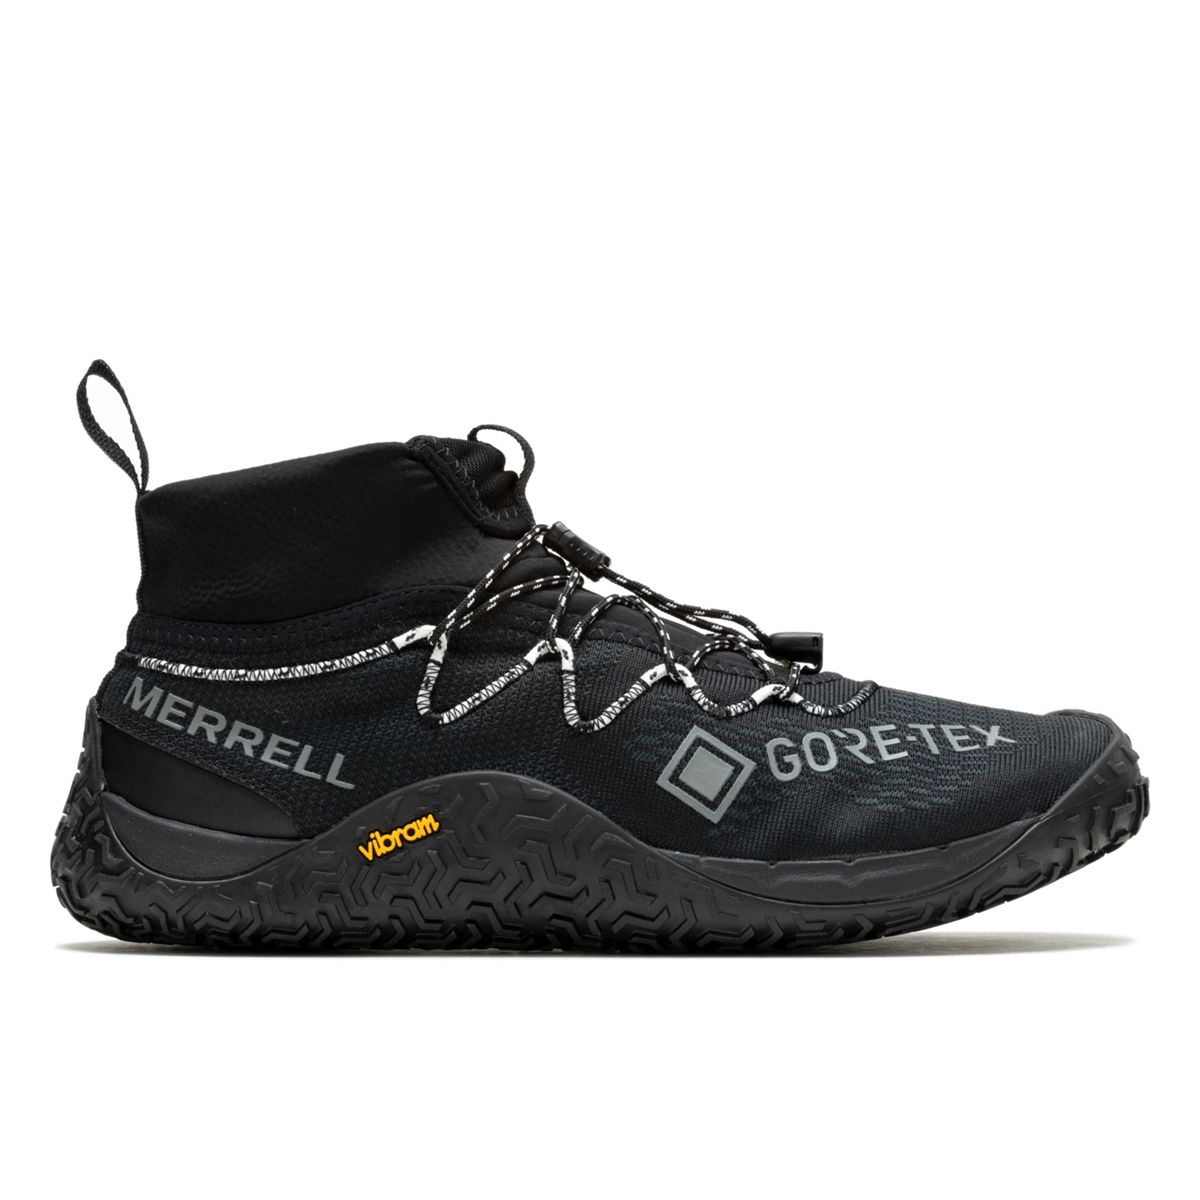 Merrell Trail Glove 7 GTX-Black, Zapatillas Hombre